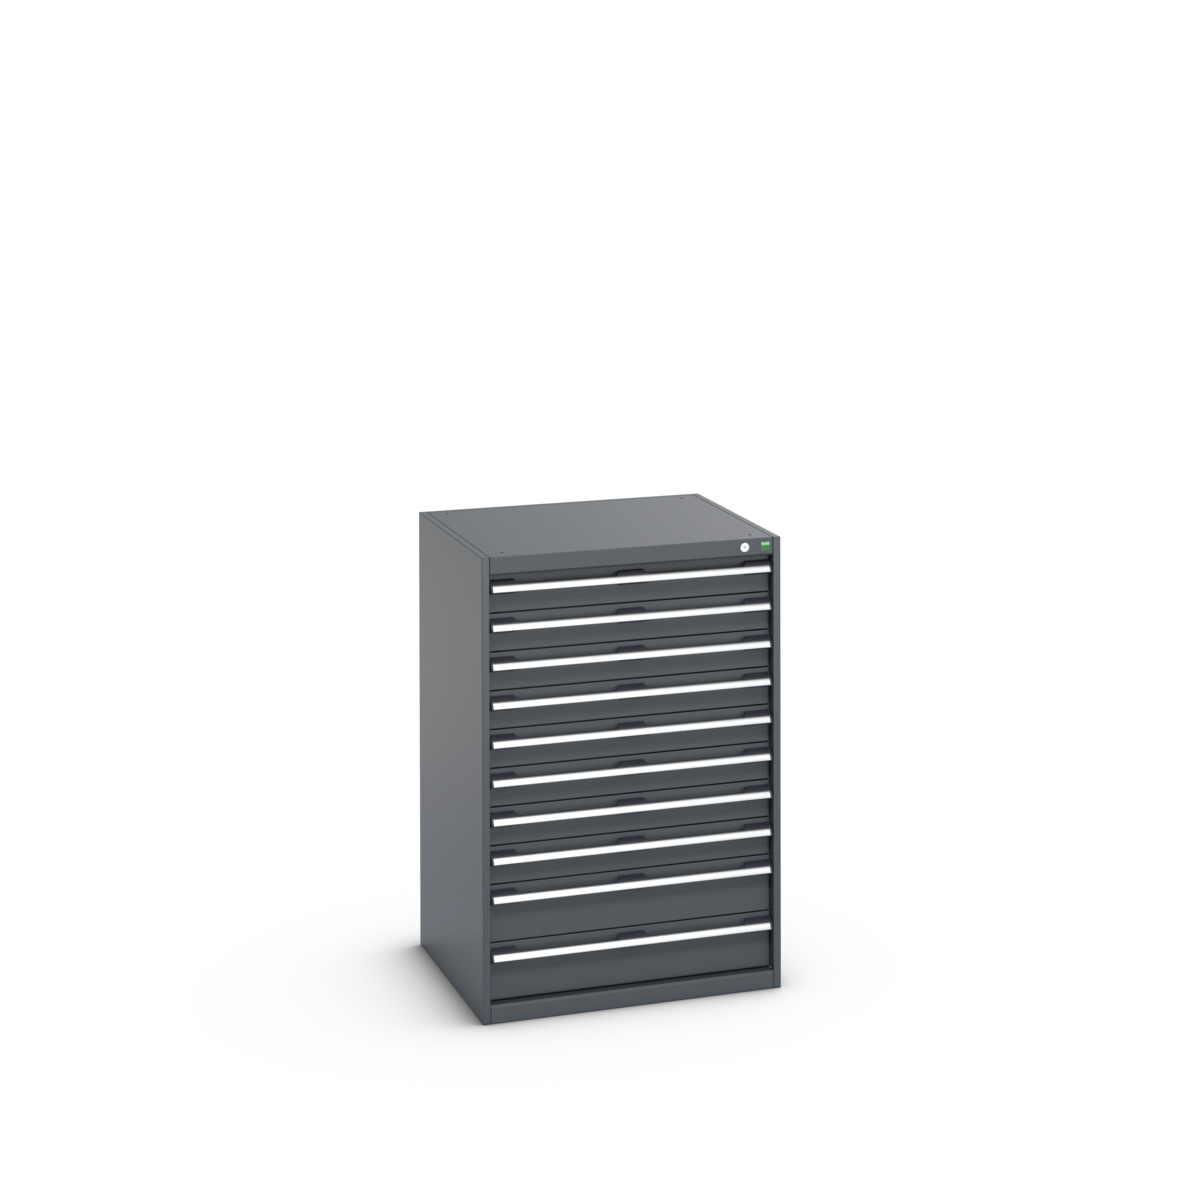 40028037.77V - cubio drawer cabinet